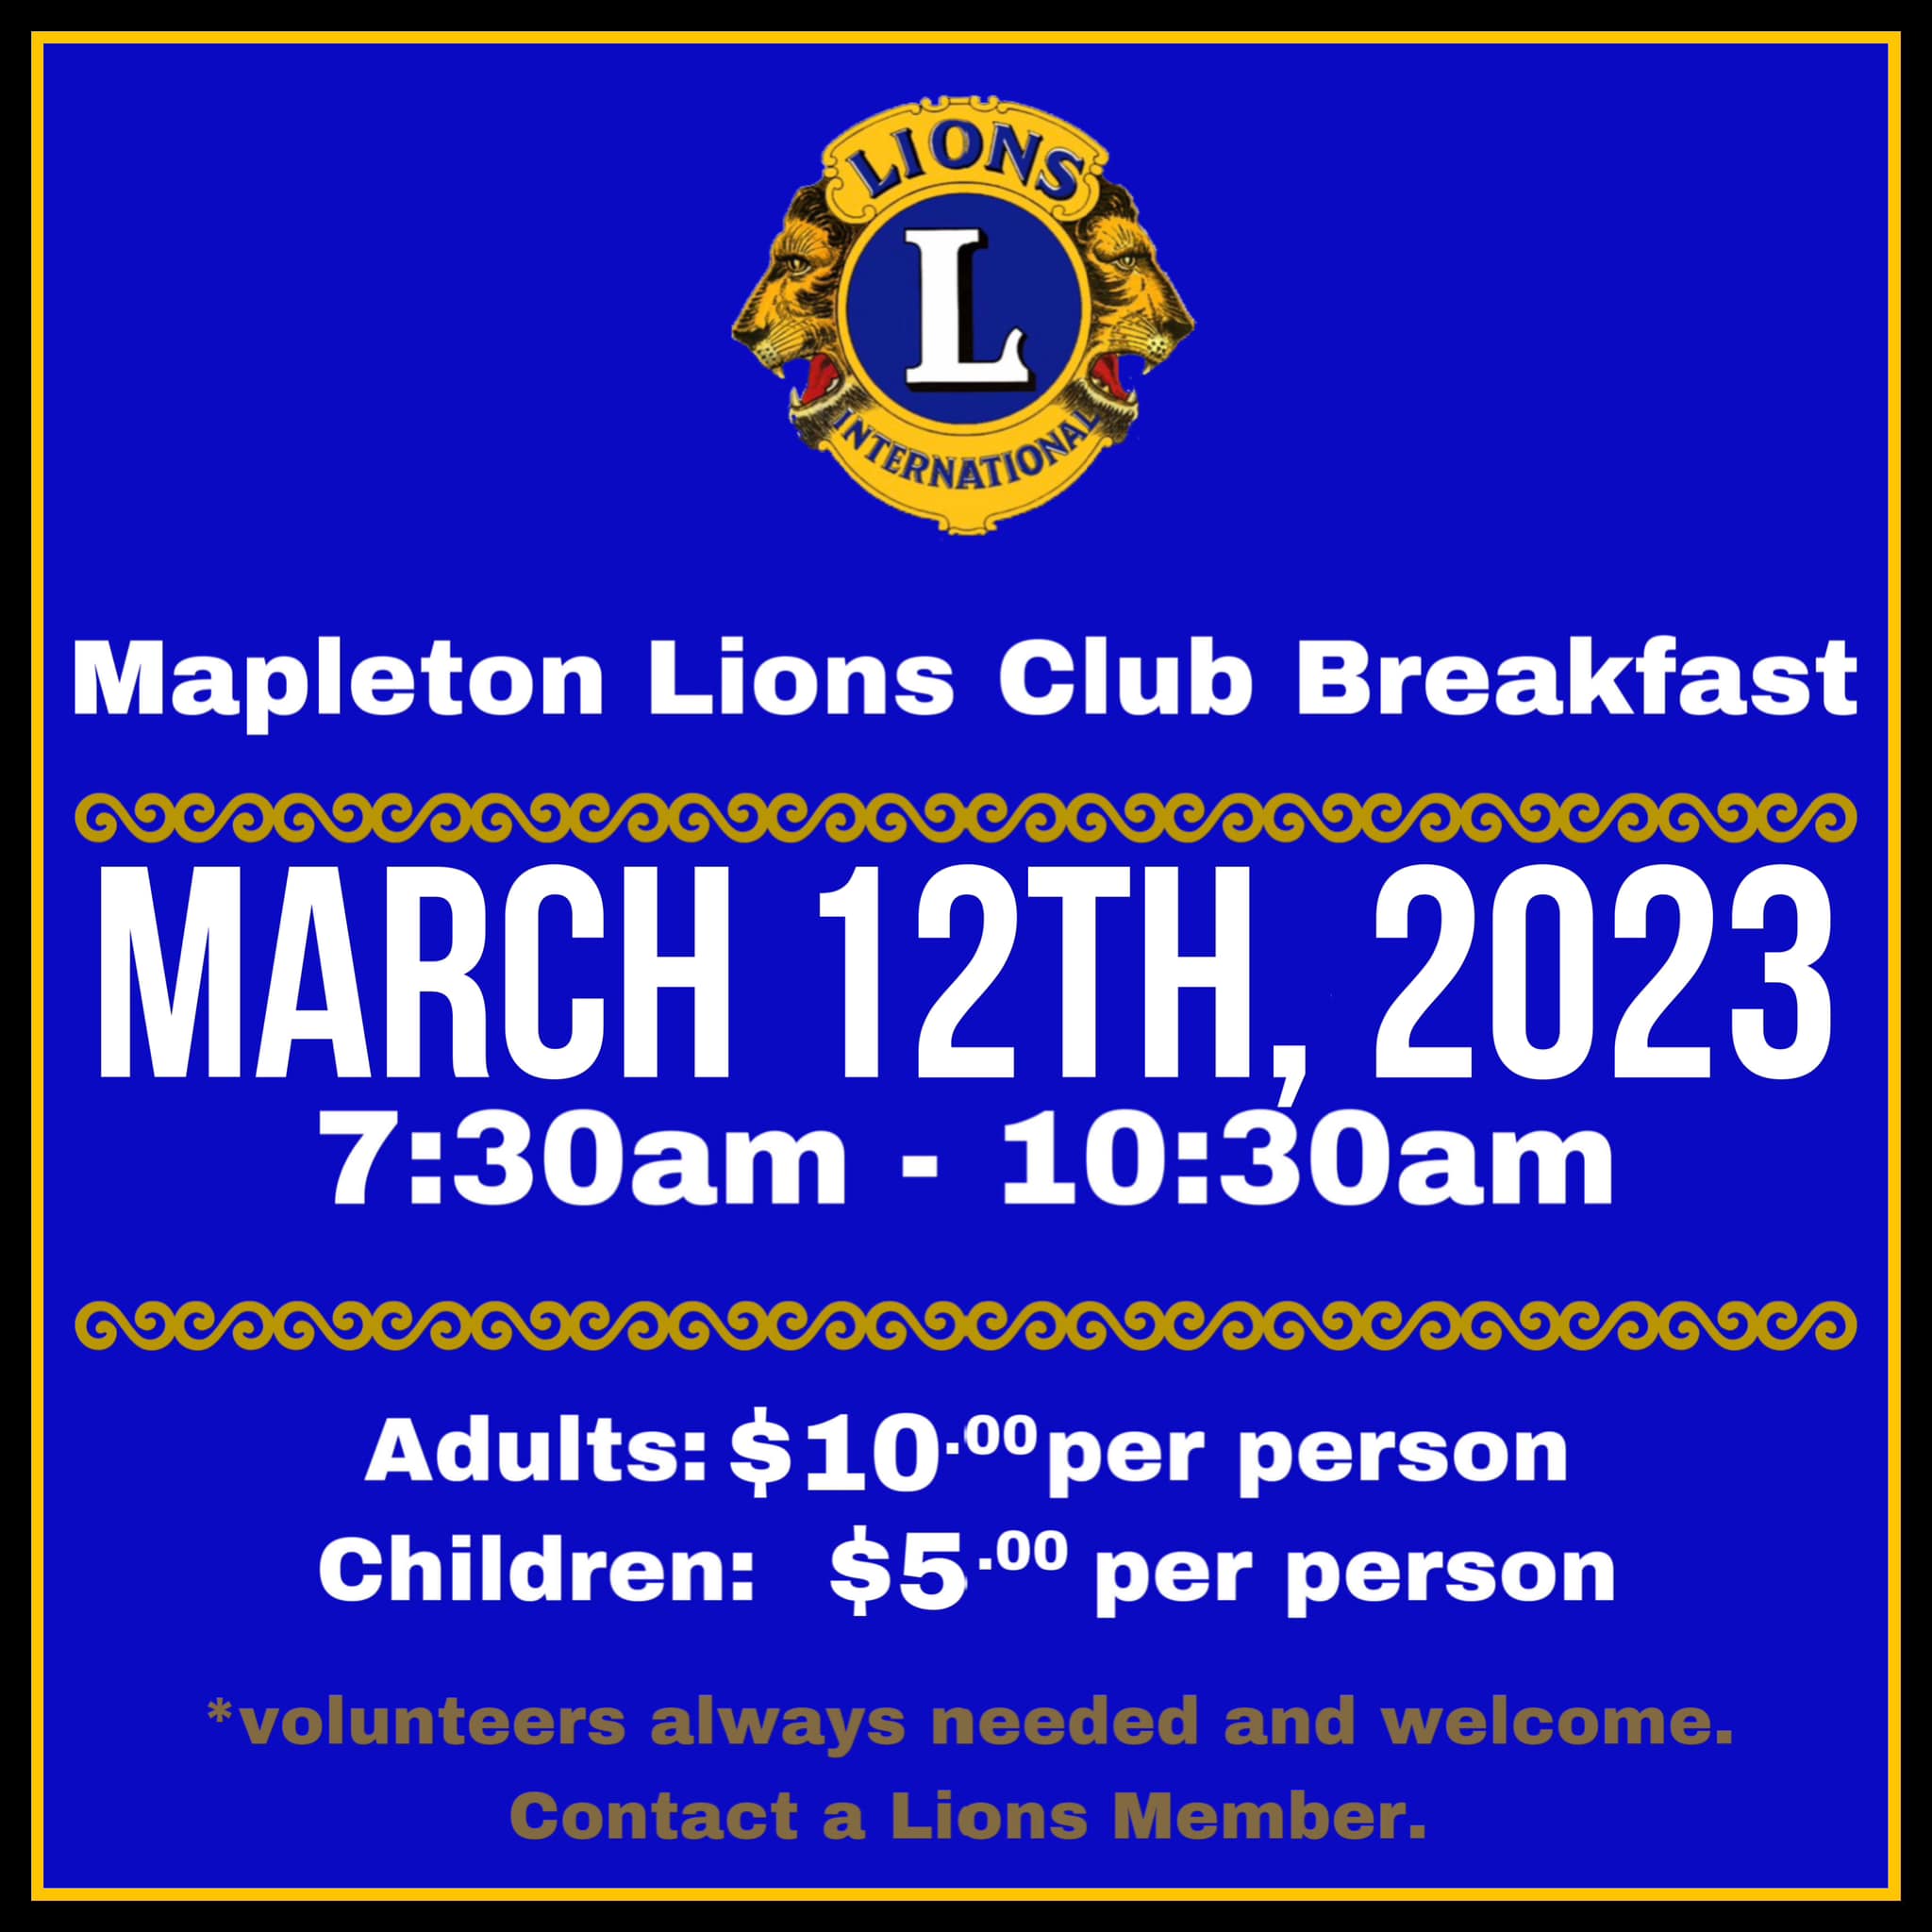 Lions Club breakfast, 7:30-10:30 am